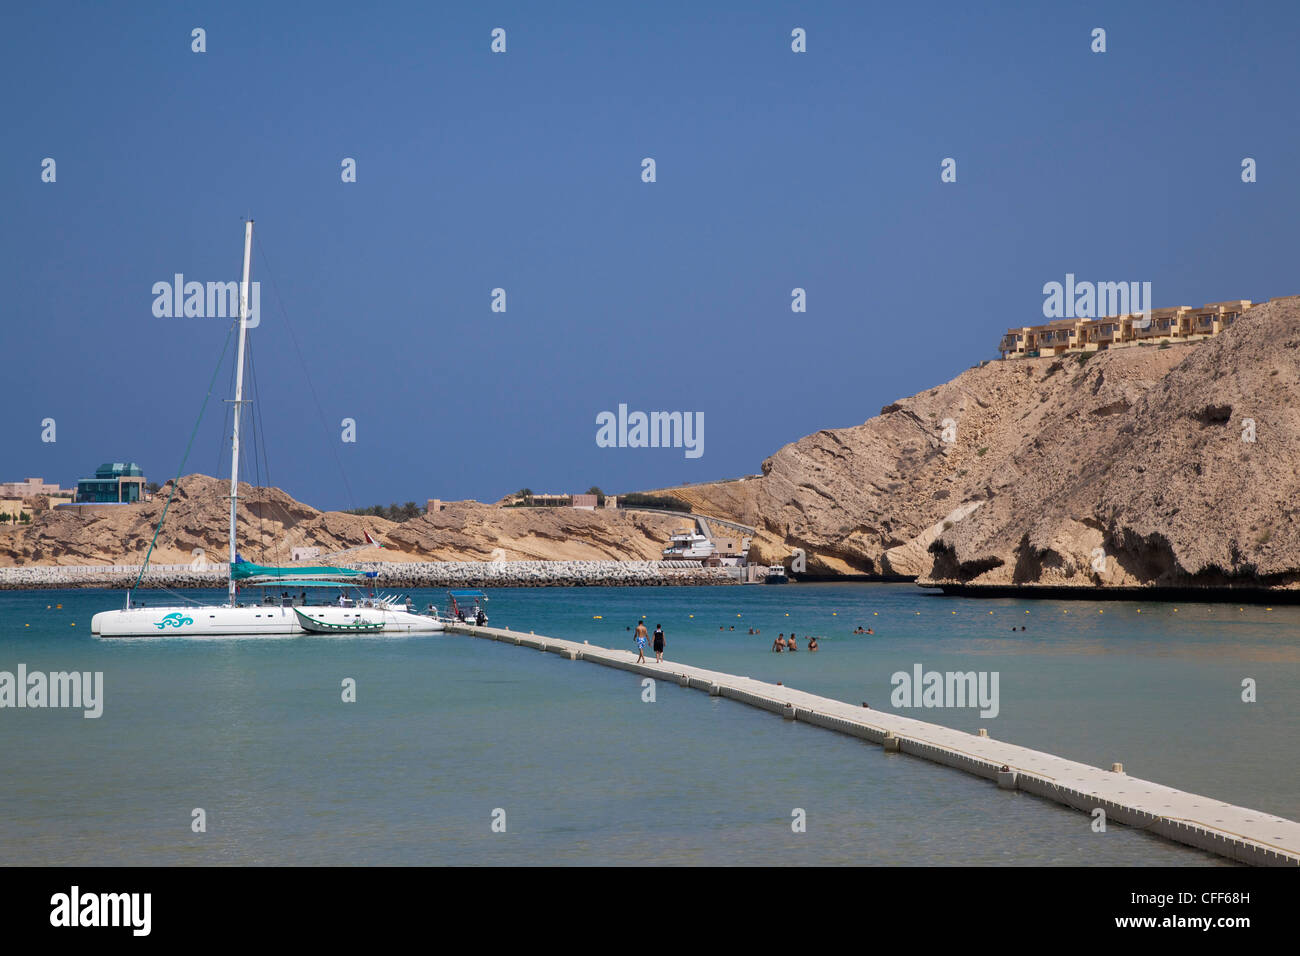 Catamarano SY Azzura, Ocean Blue Oman Cruises, presso il molo di Oman Dive Center, Muscat Masqat, Oman, Penisola arabica Foto Stock